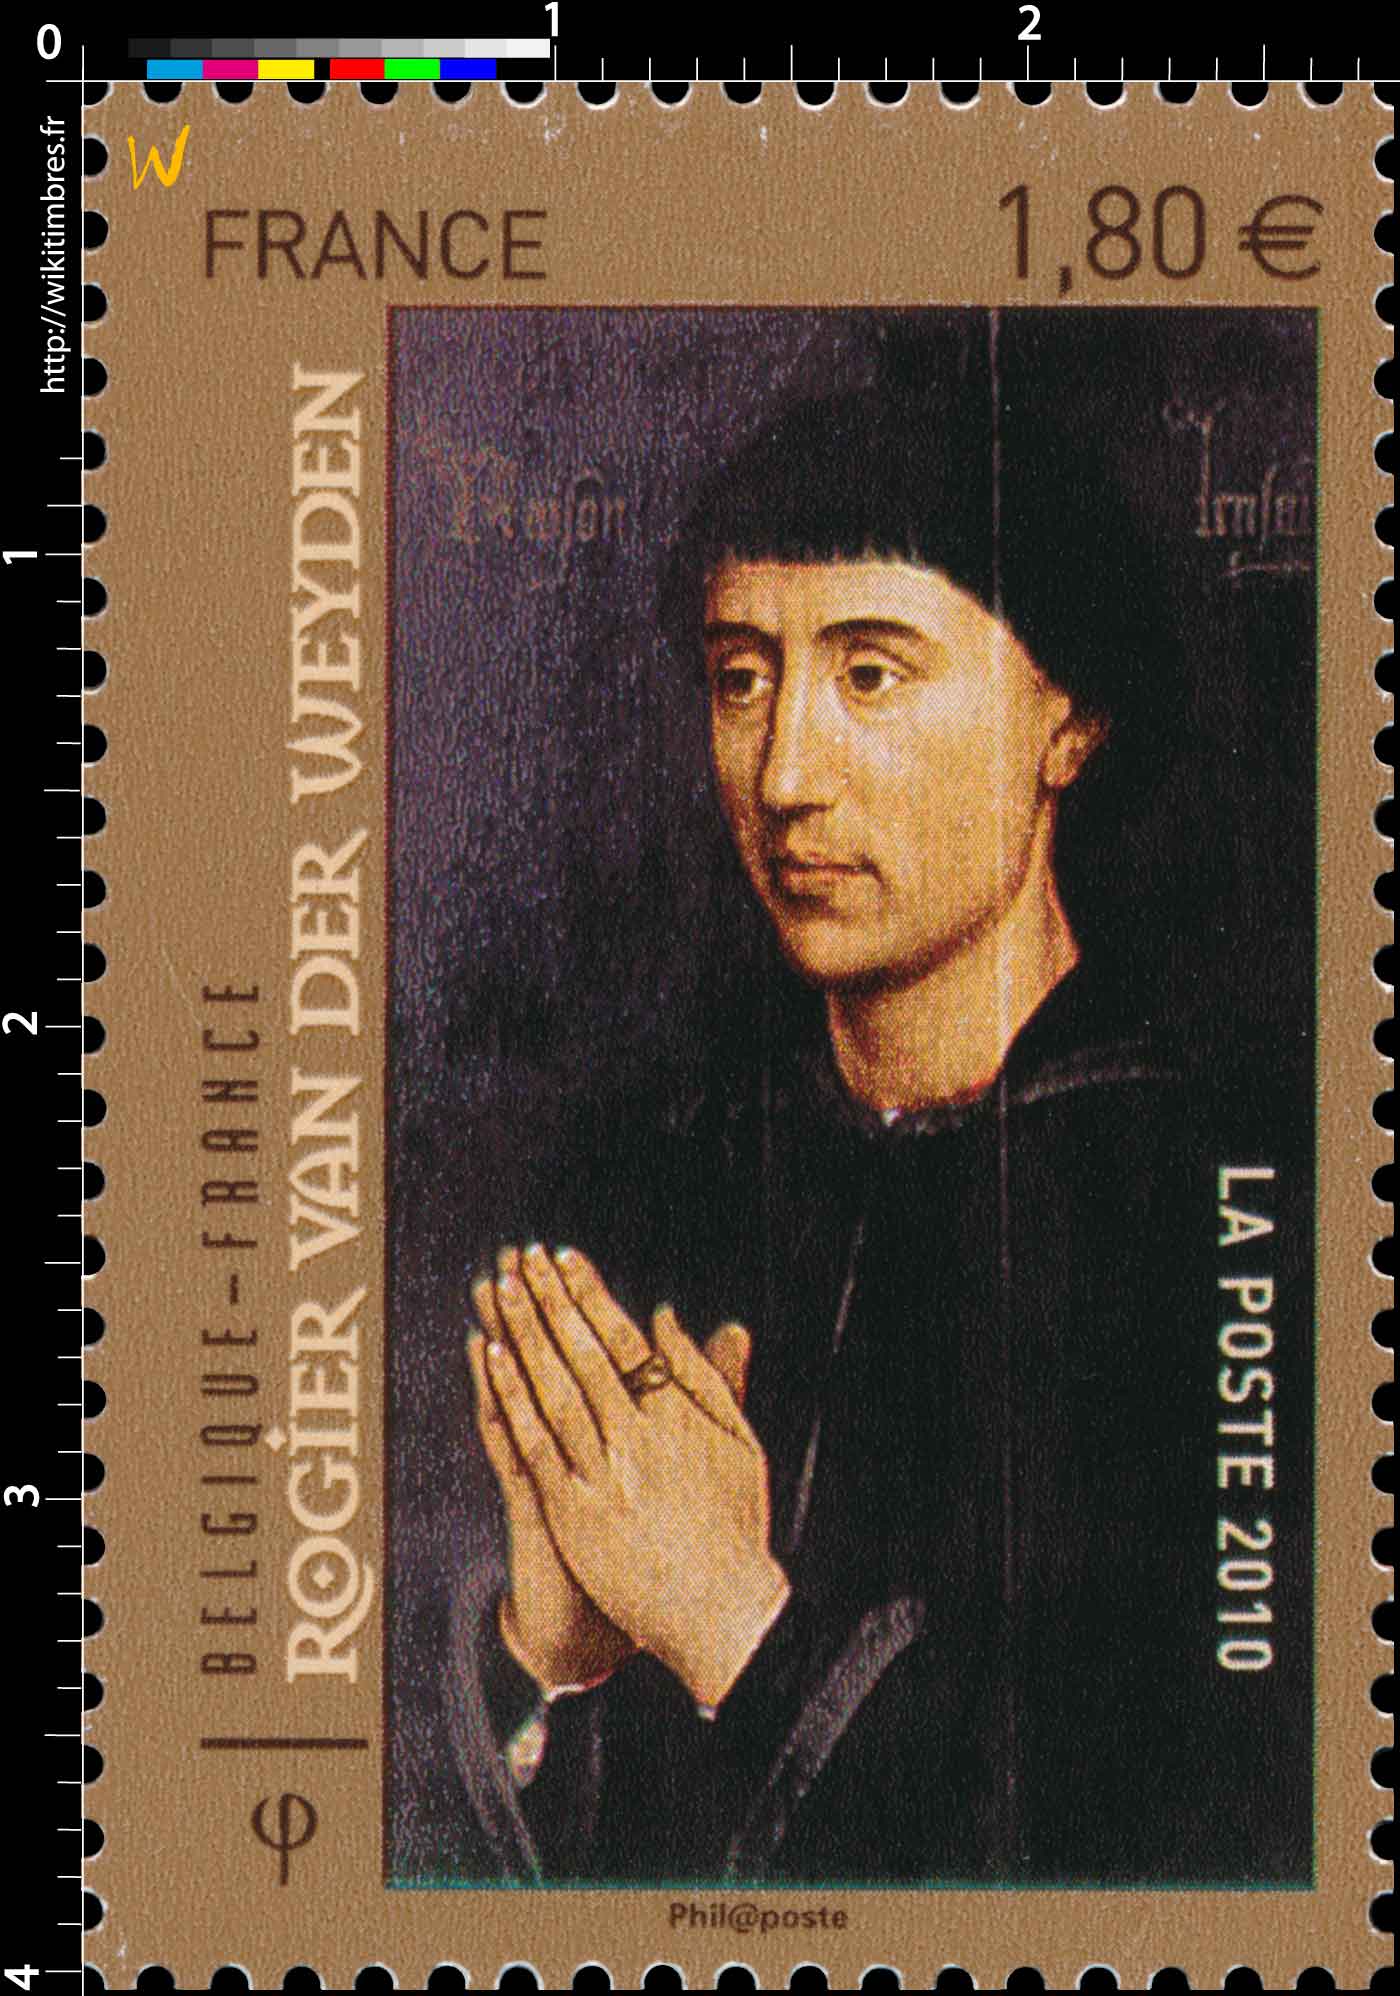 2010 Belgique-France Rogier Van Der Weyden